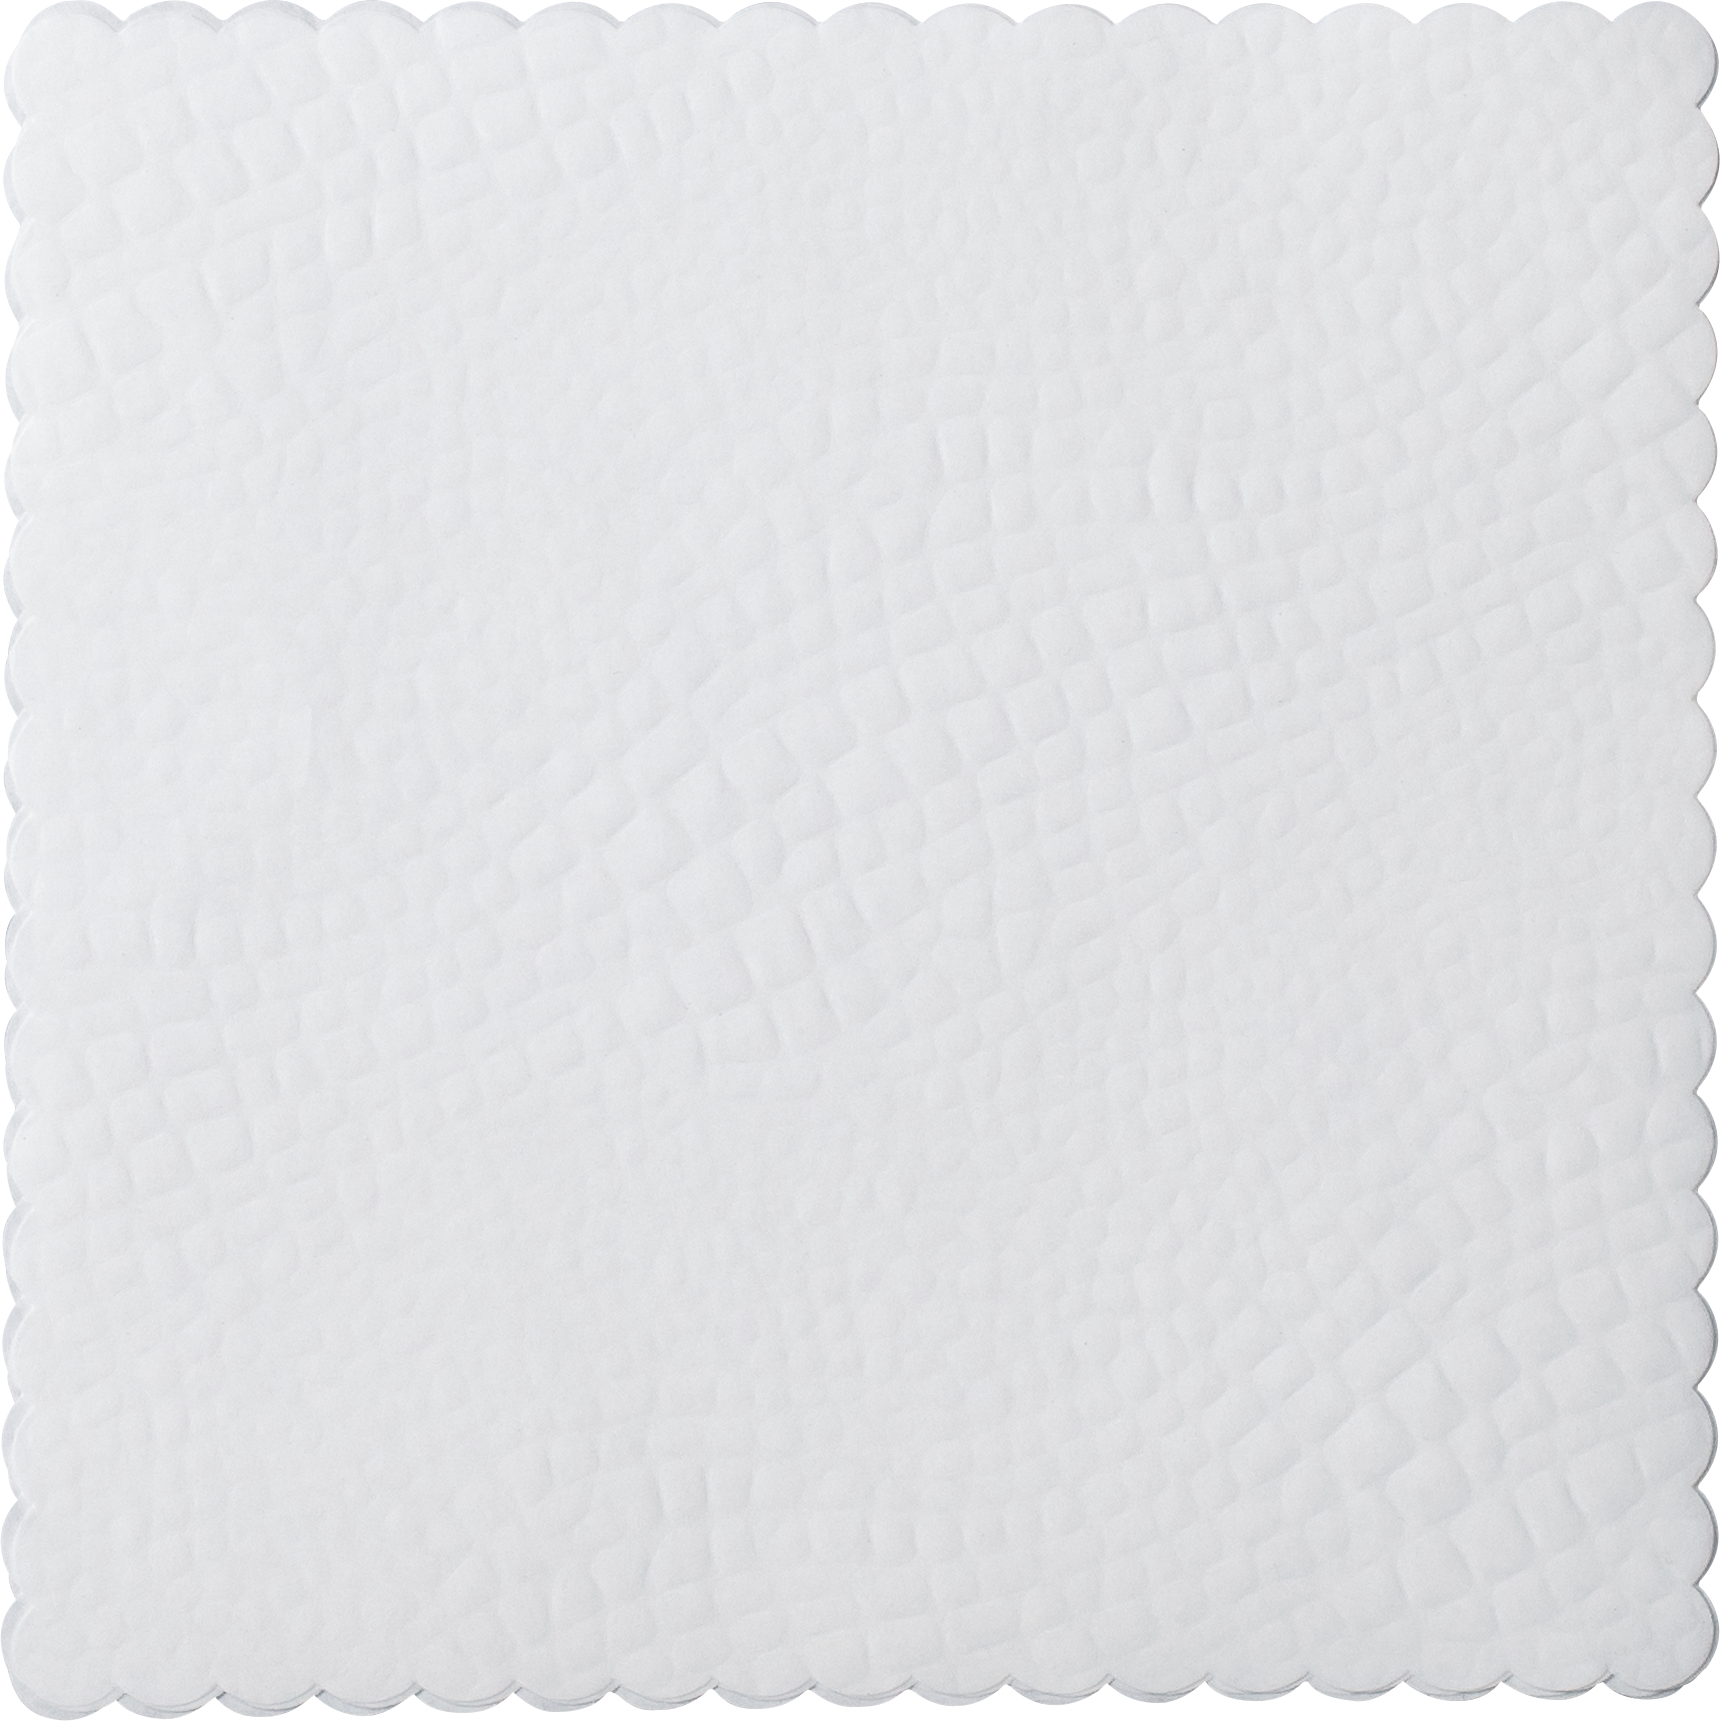 Croco dish paper square, 16 x 16cm